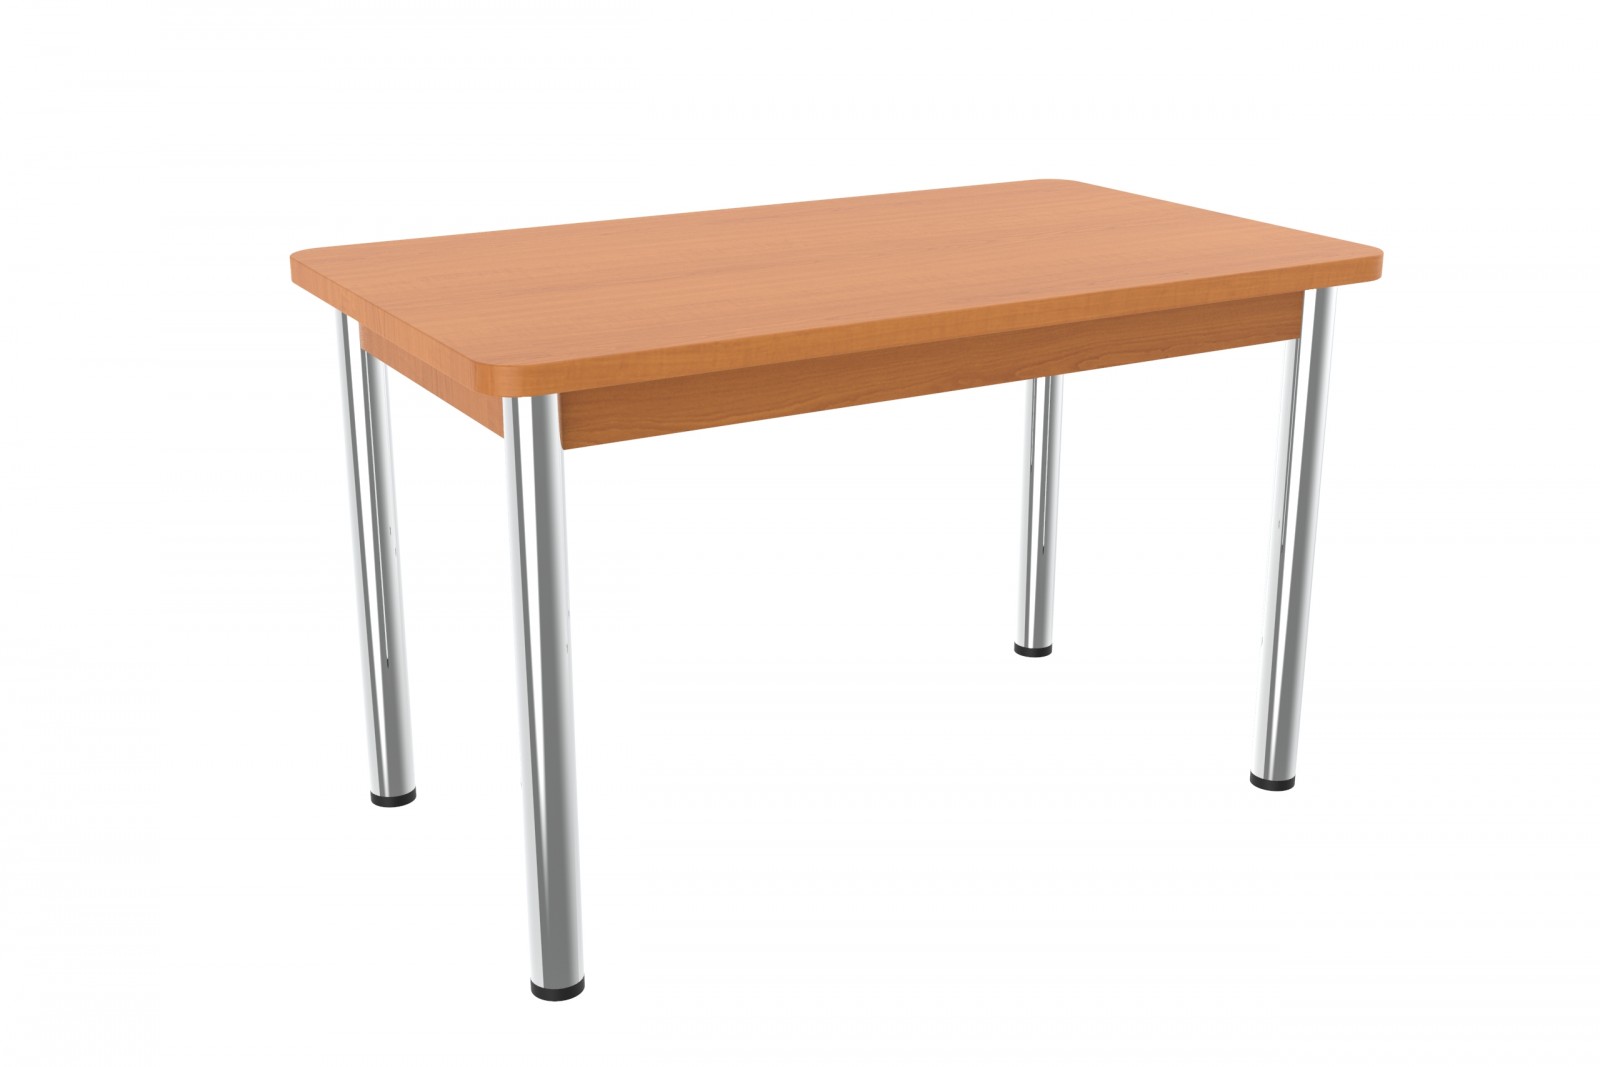 Stůl s kovovými nohami Sevo 120 x 70 cm